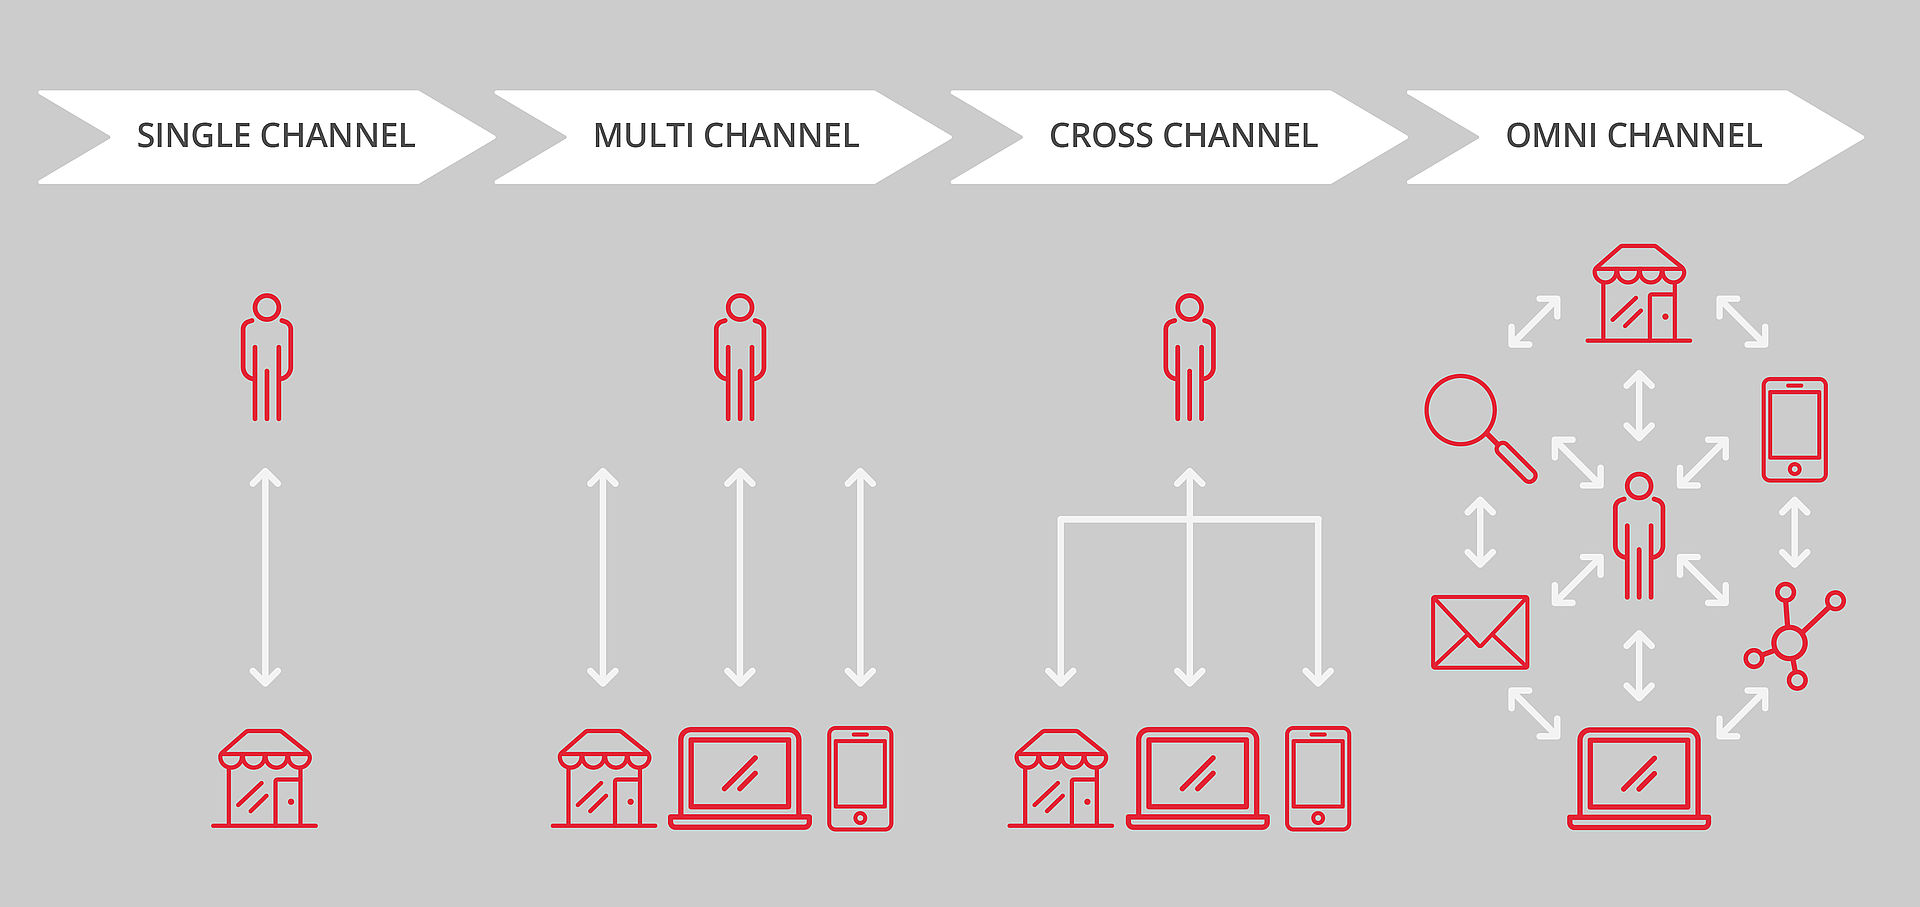 Représentation graphique des interactions via les différents canaux entre un business et sa clientèle